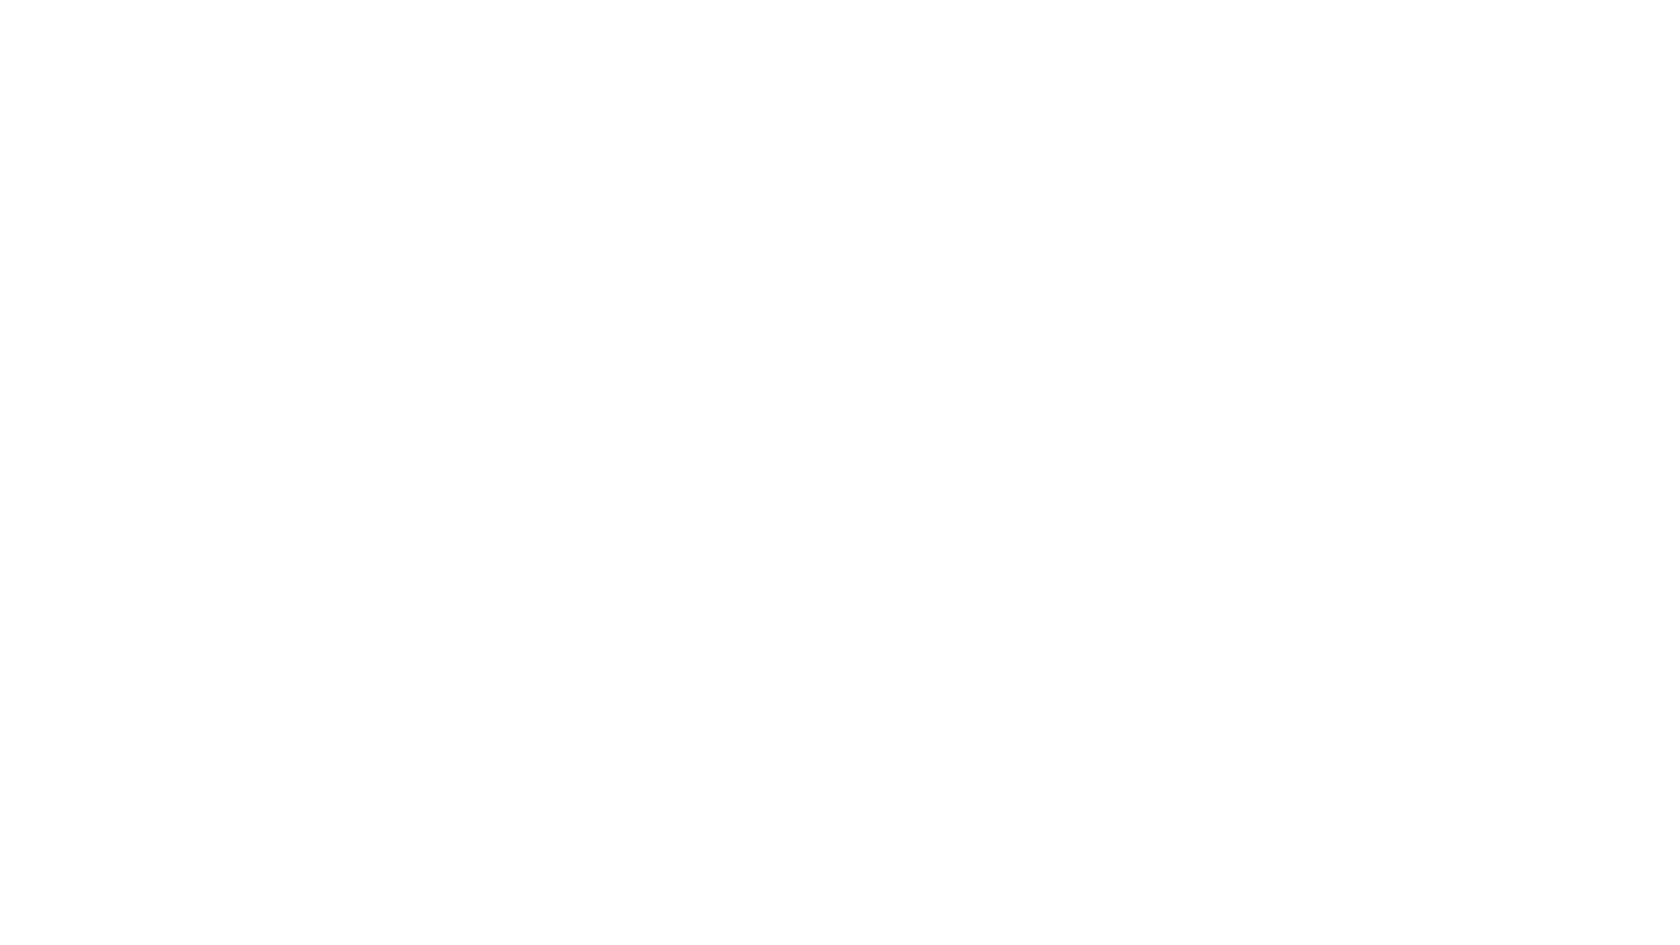 Gexcon Logo